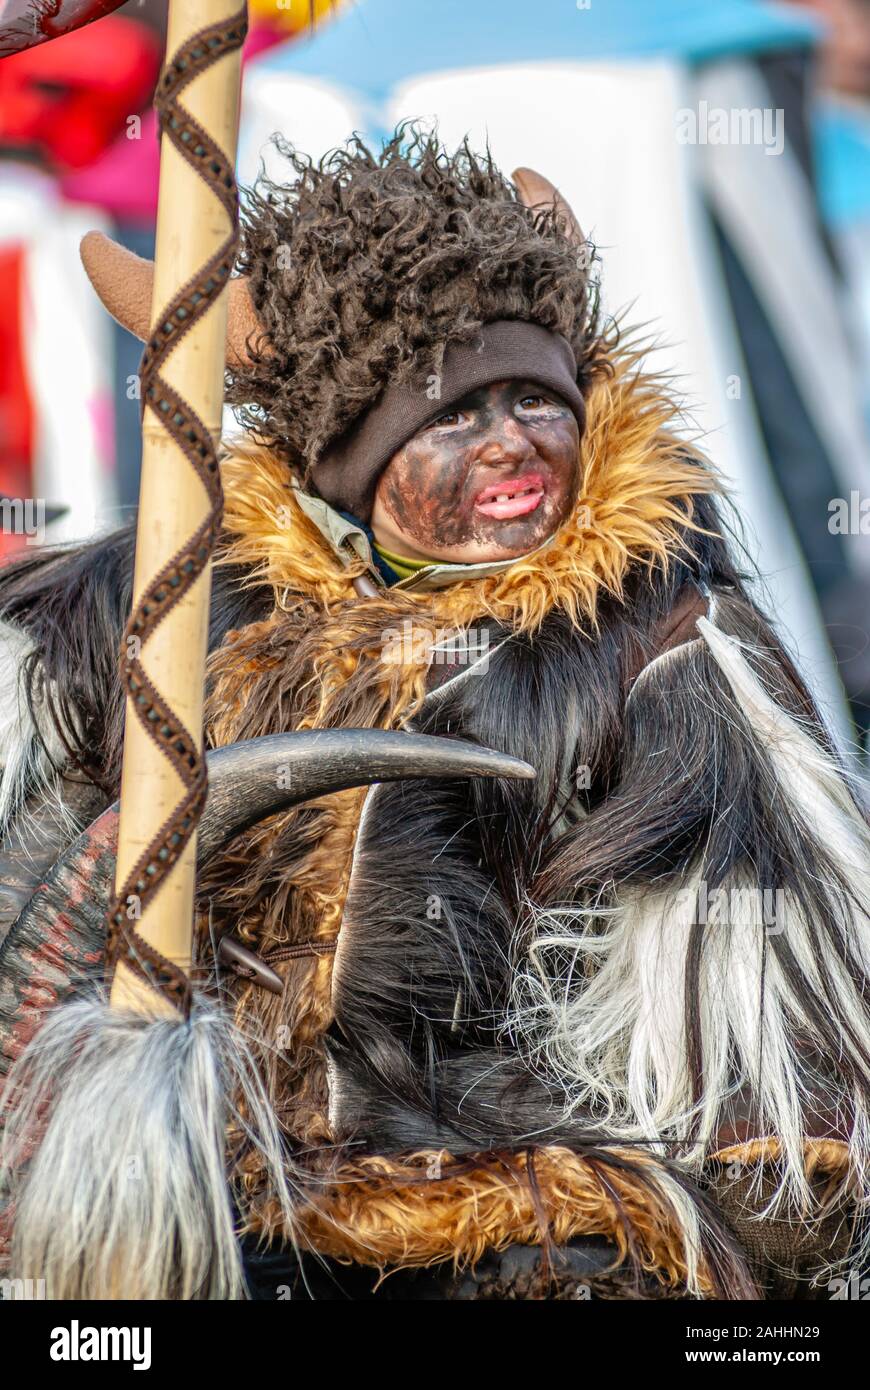 Bébé habillé dans un costume de carnaval pour le carnaval de Lucerne, Suisse Banque D'Images